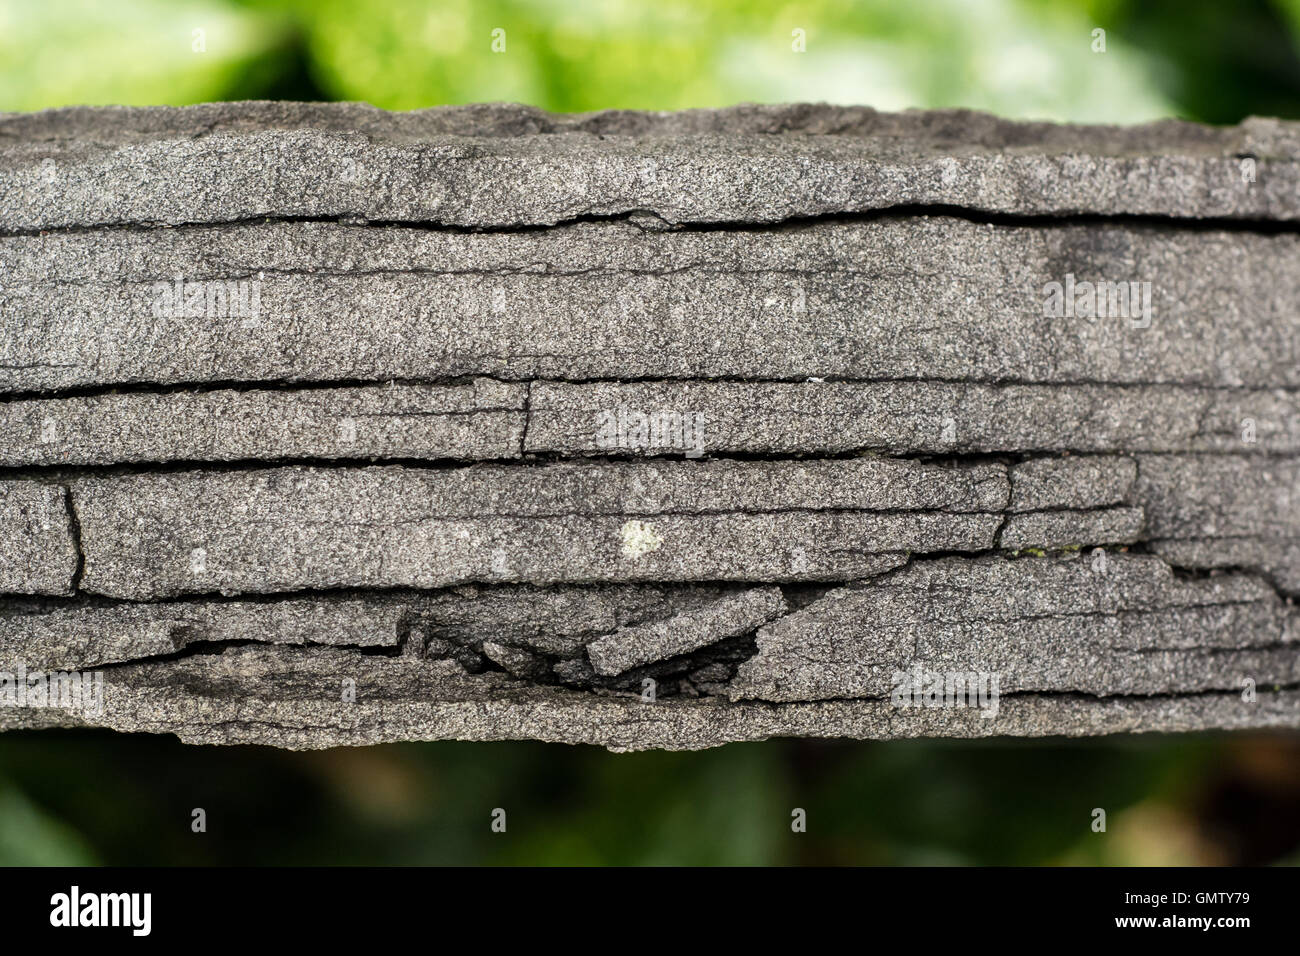 Risse in verwitterter Grabstein. Grabstein zeigt Risse durch Verwitterung, wo Wasser ein- und Einfrieren betont Stockfoto